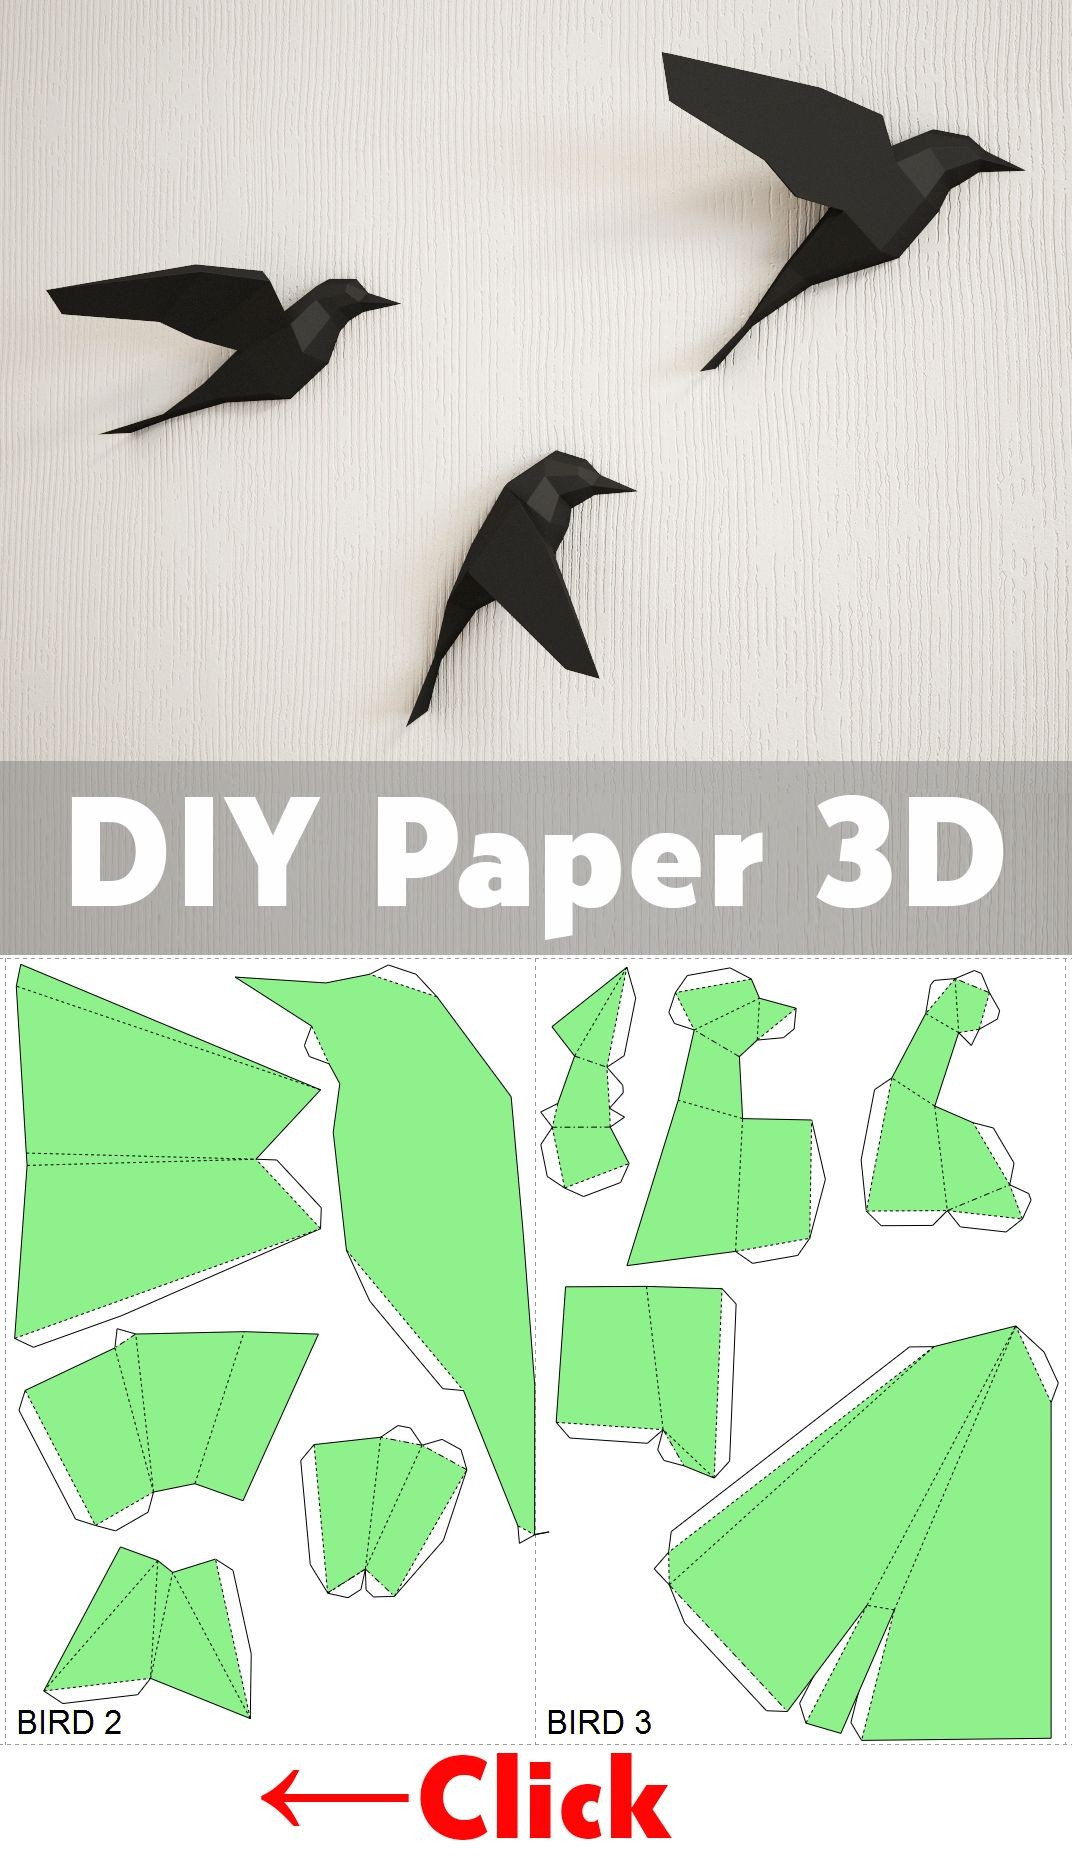 Shark Papercraft Diy Paper Birds On Wall 3d Papercraft Easy Paper Model Sculpture